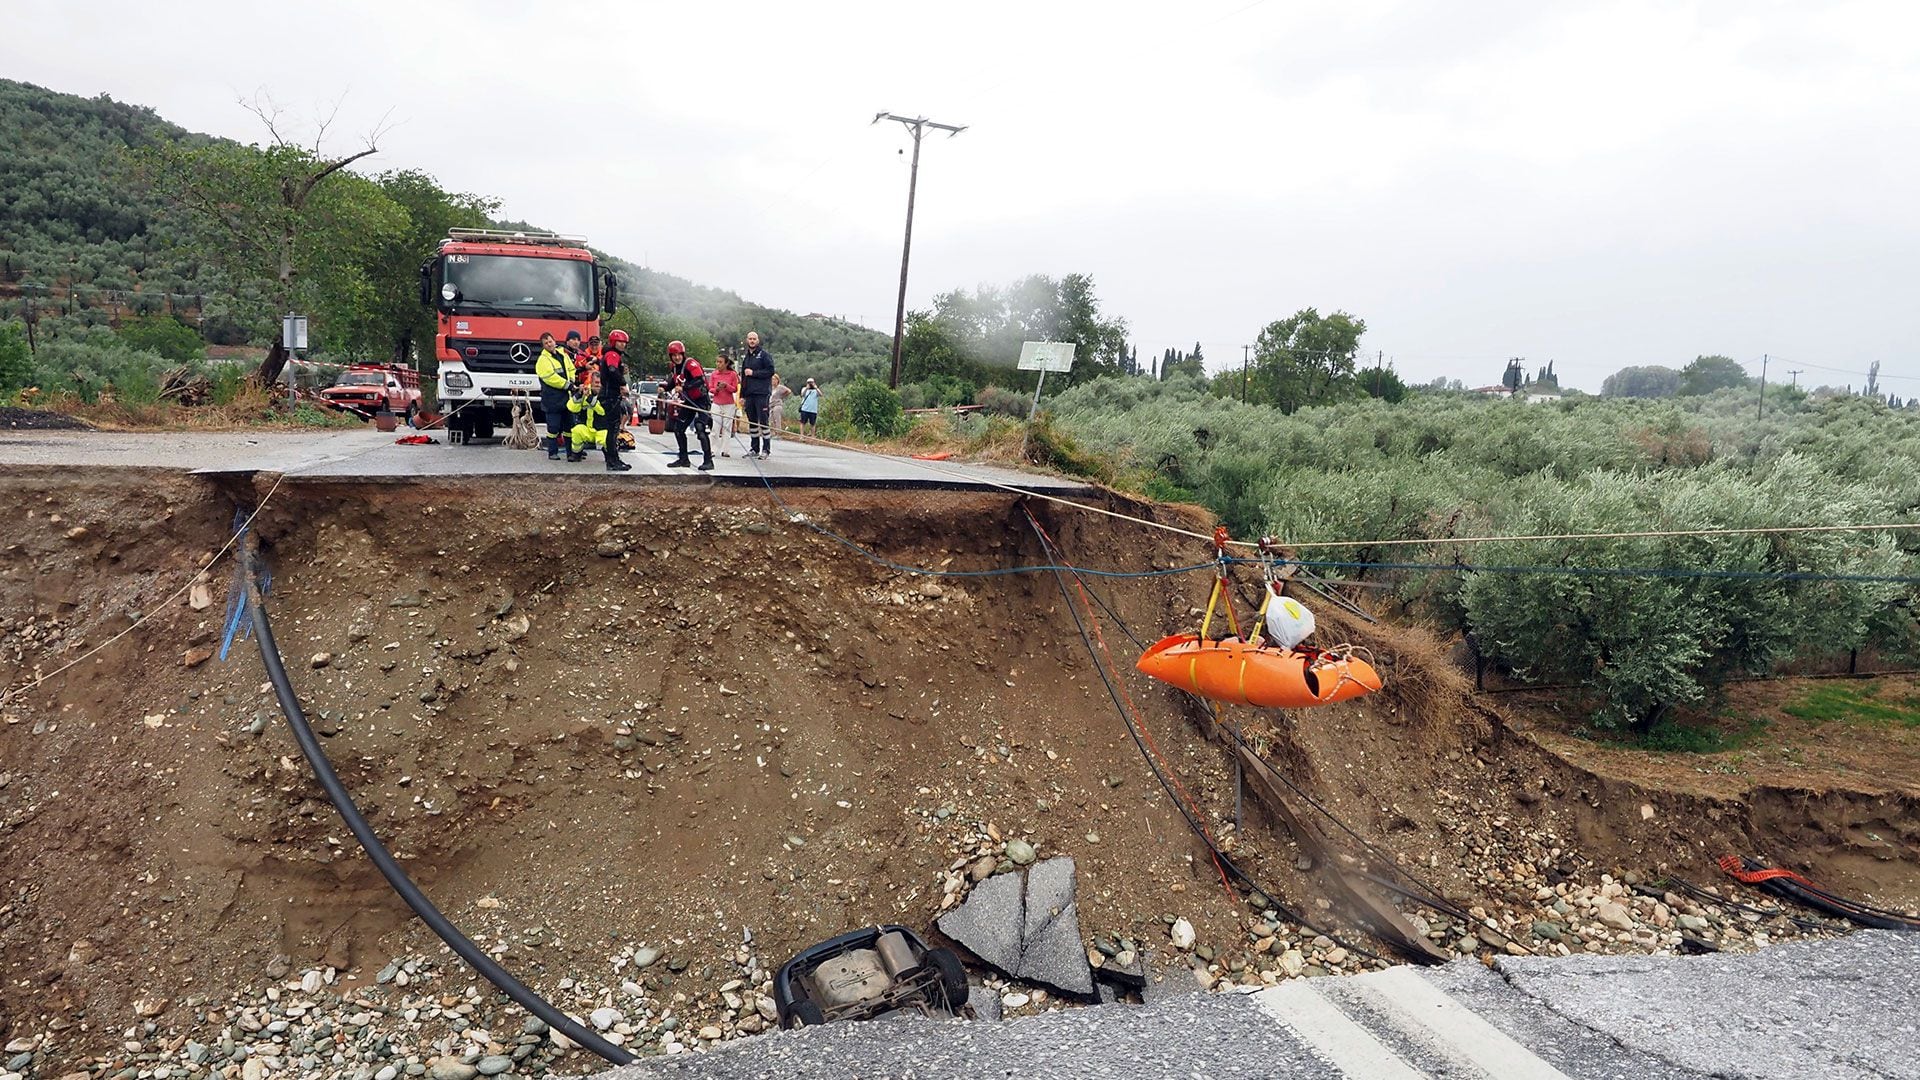 Los bomberos utilizan cuerdas para levantar a un paciente renal en una camilla a través de una carretera dañada  (AP/Thodoris Nikolaou)